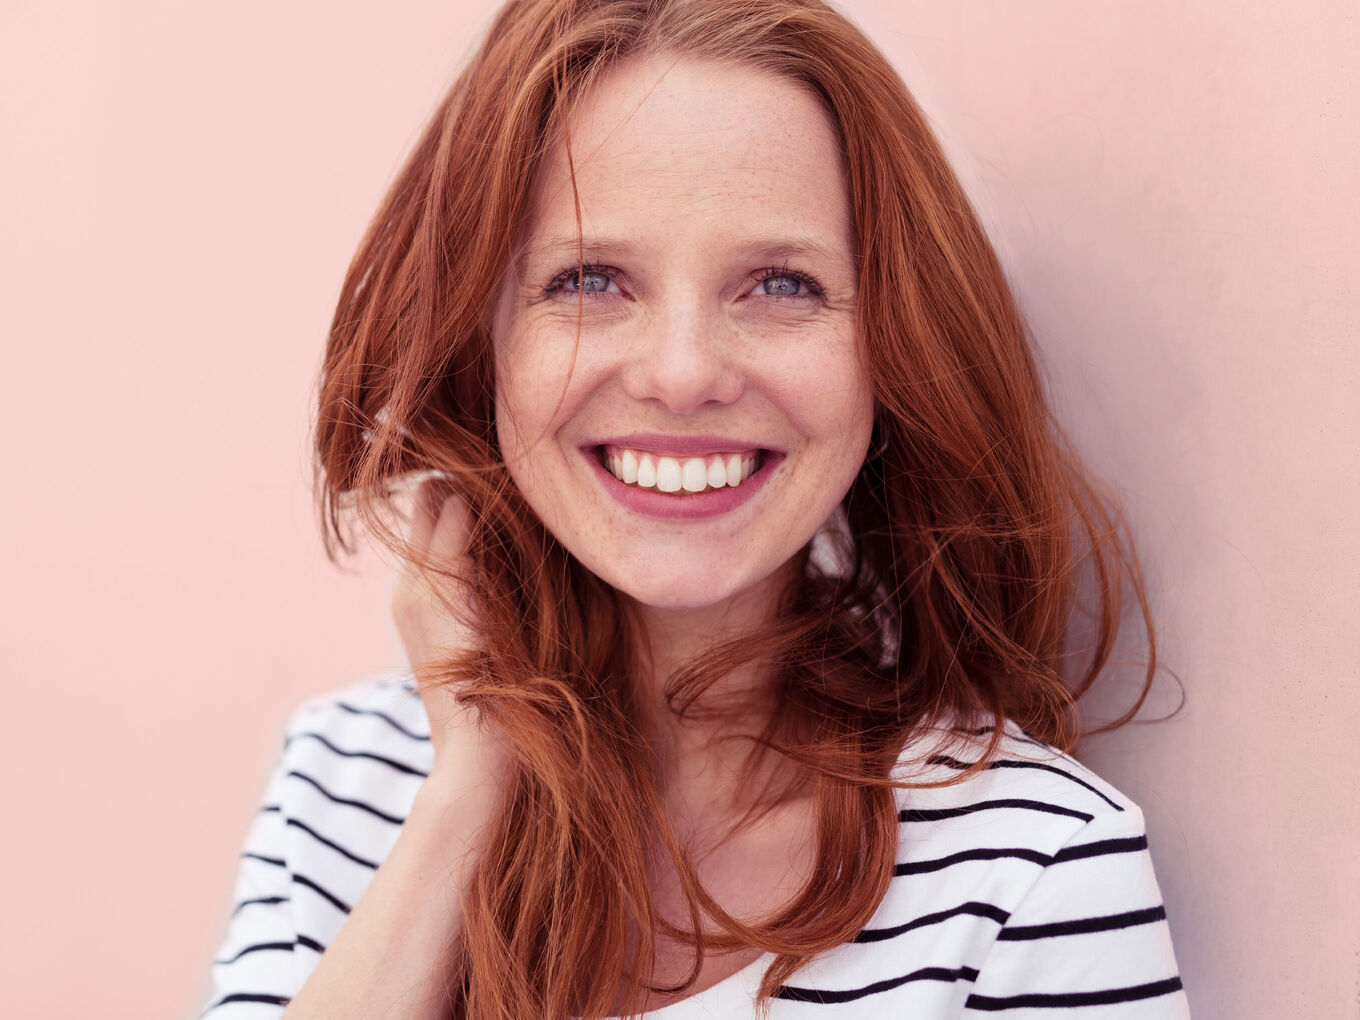 Portrait einer lachenden junge Frau in hellem Oberteil vor pastellrosafarbenem Hintergrund